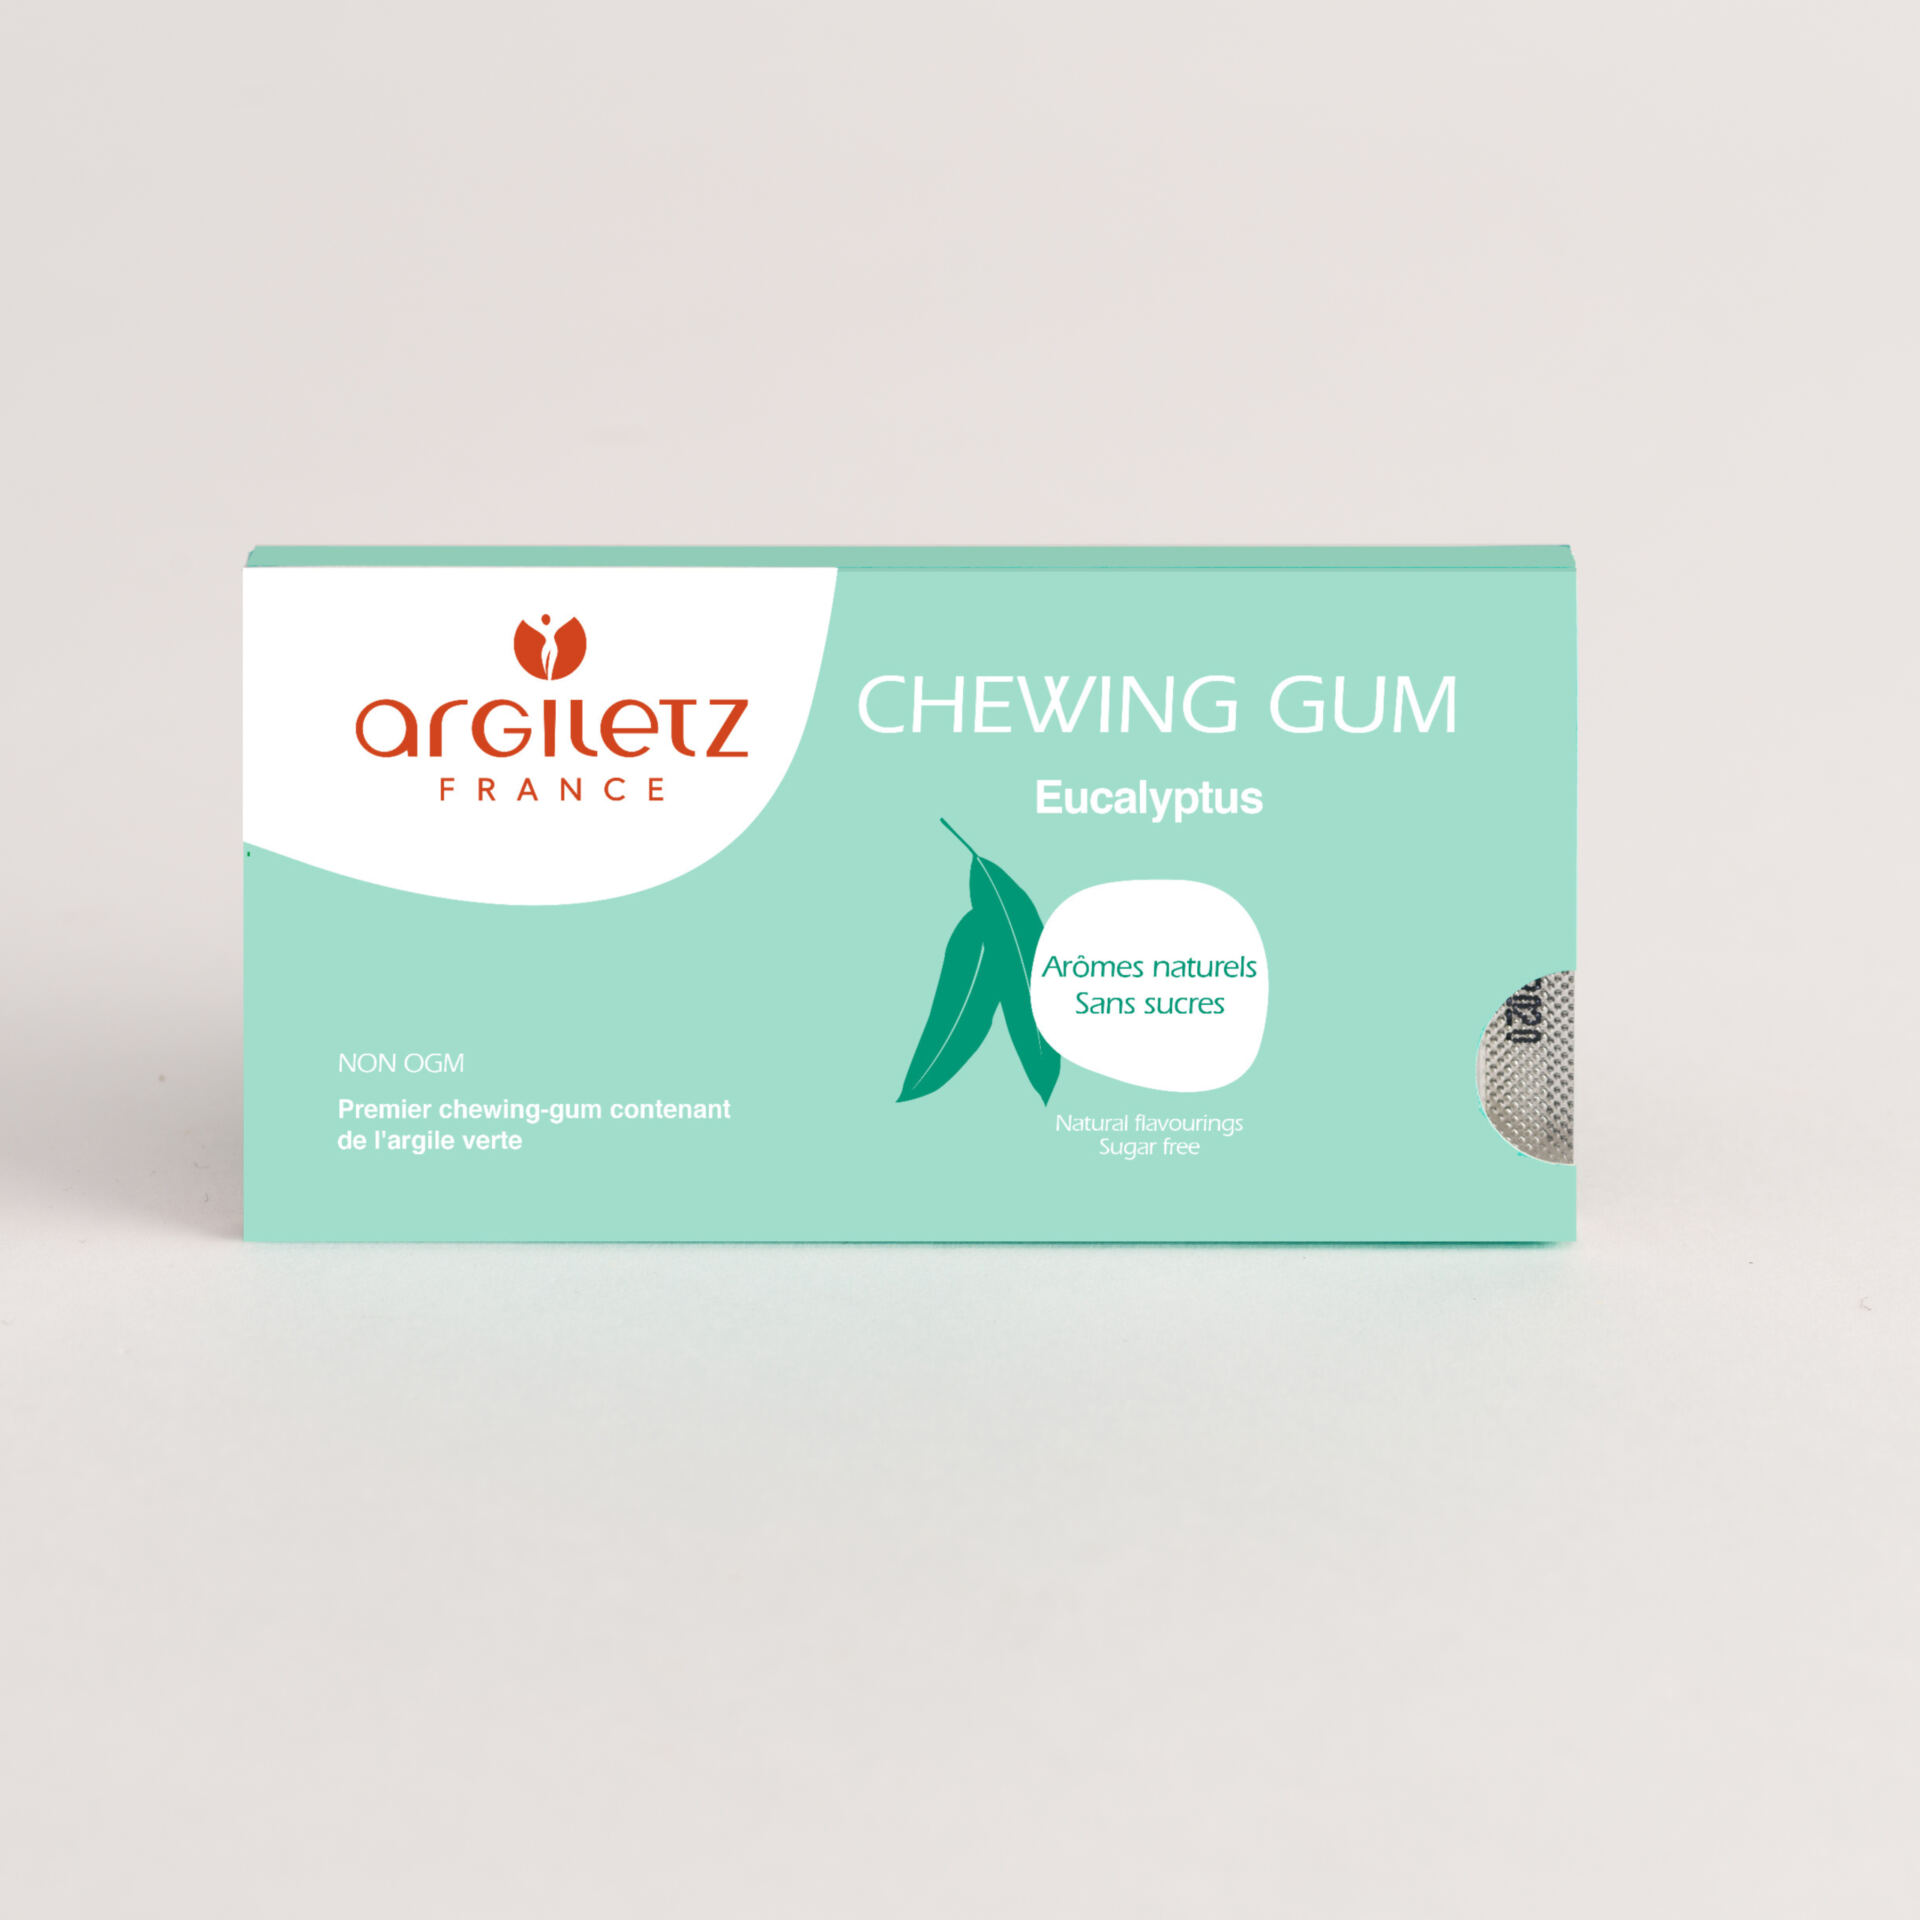 ARGILETZ_Chewing-gum eucalyptus